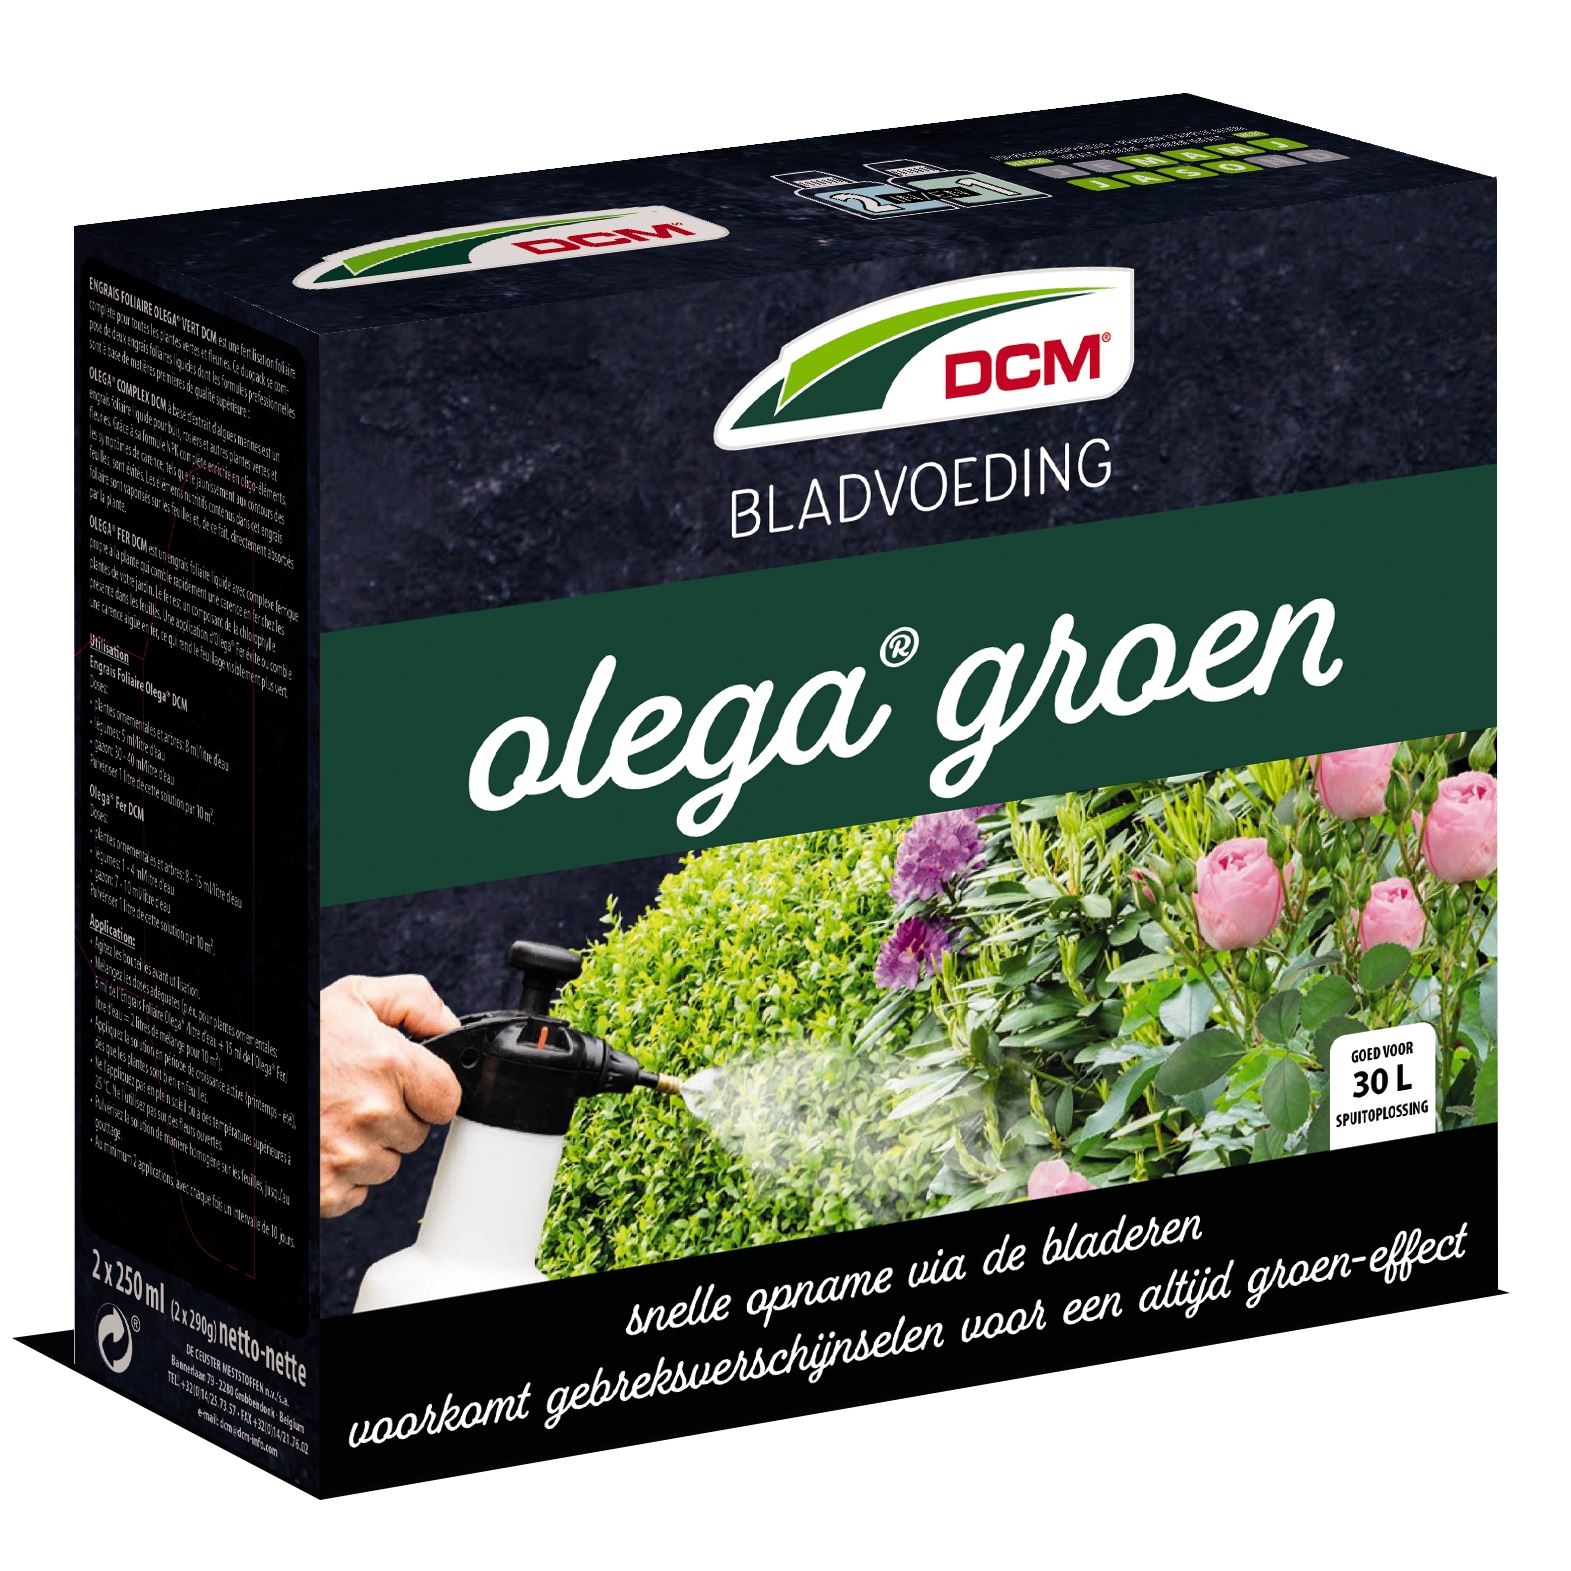 Bladvoeding-Olega-groen-0-5L